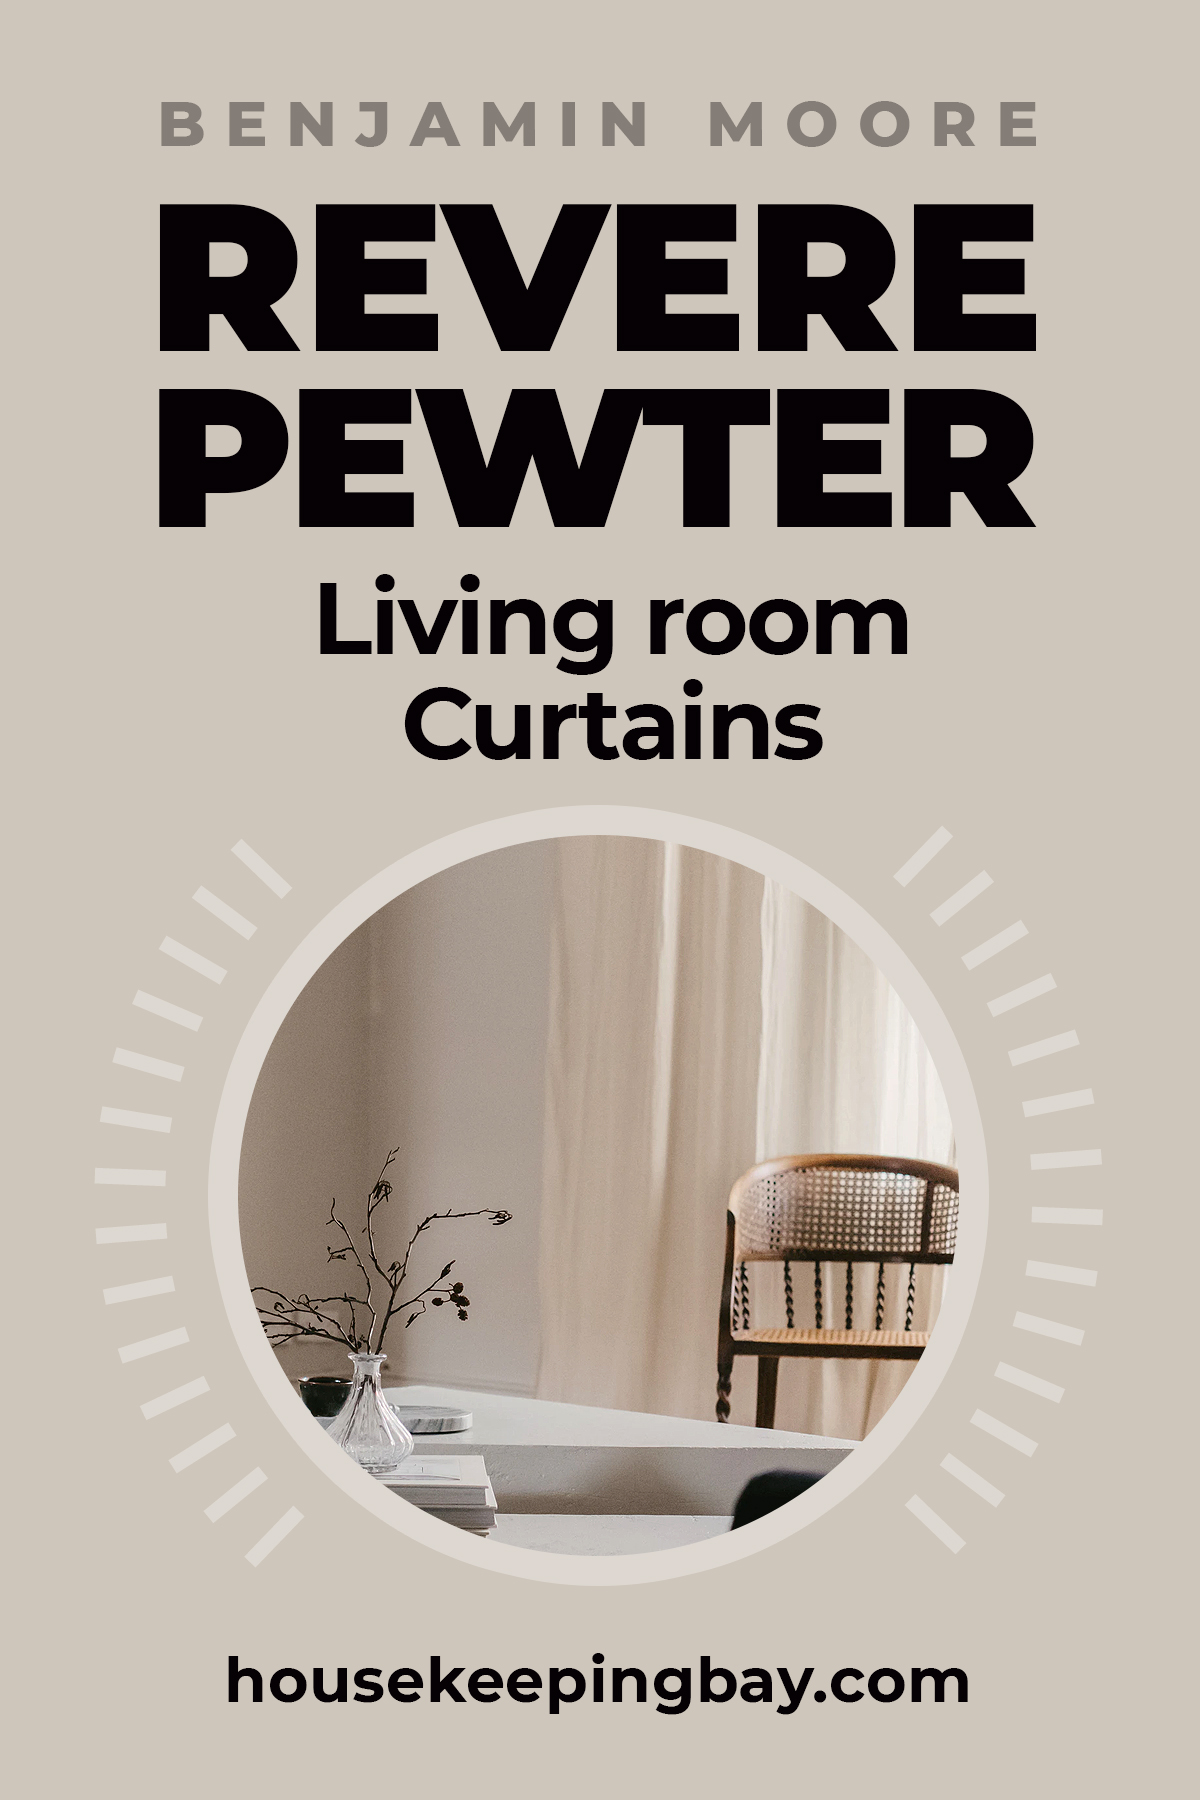 Revere pewter living room urtains